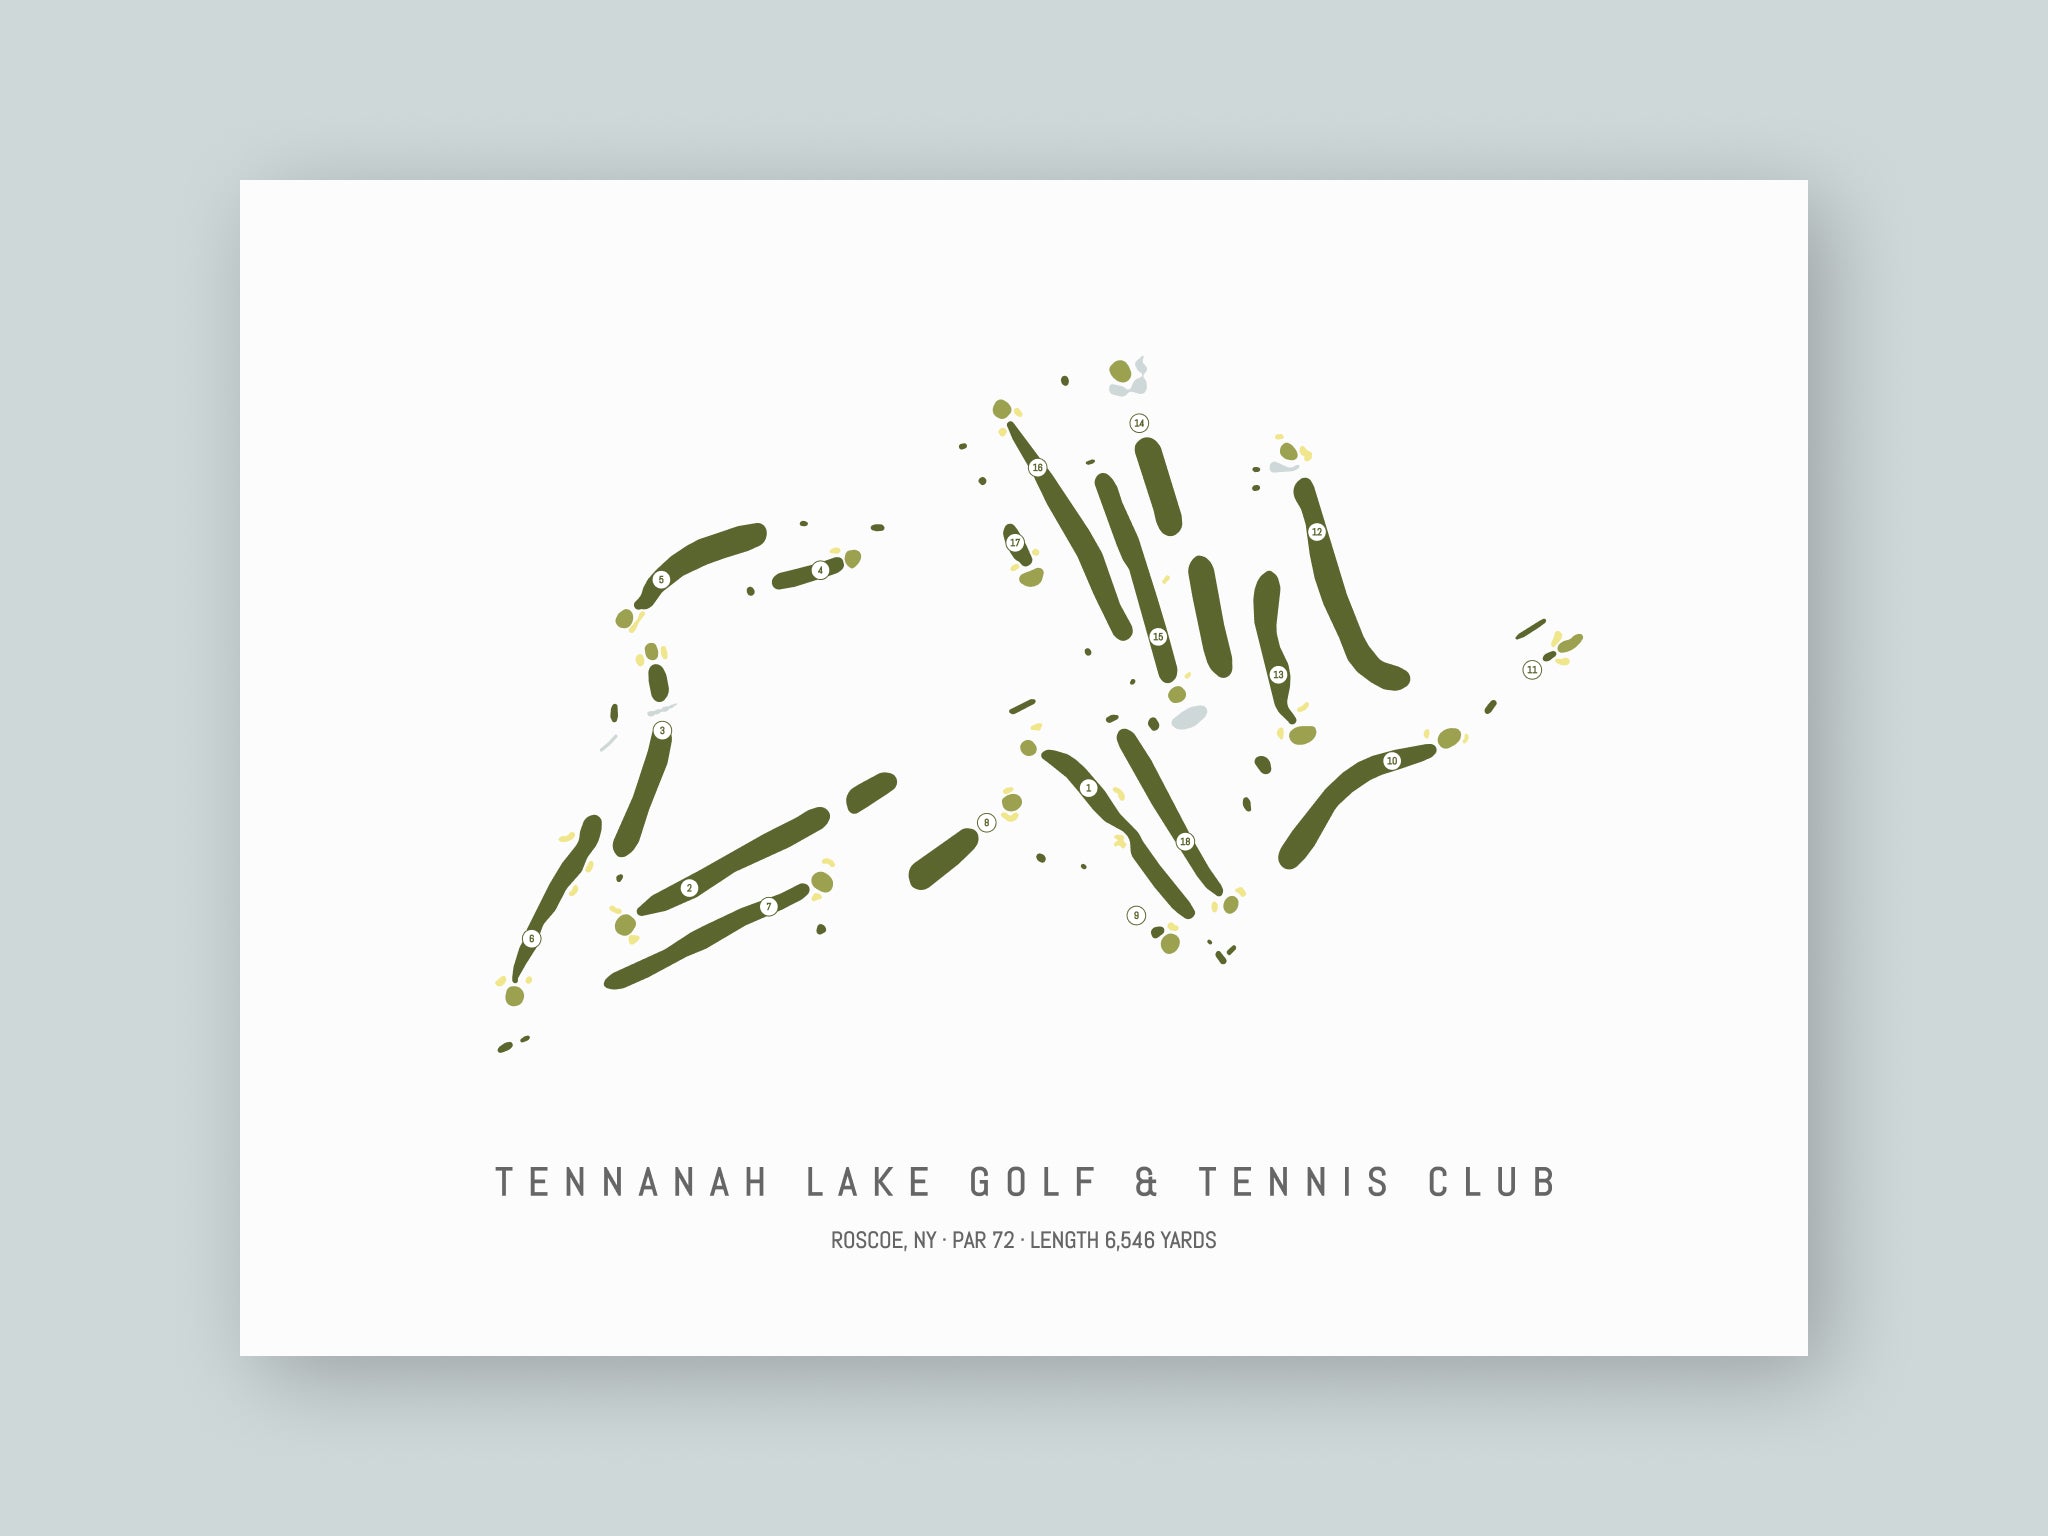 Tennanah Lake Golf & Tennis Club